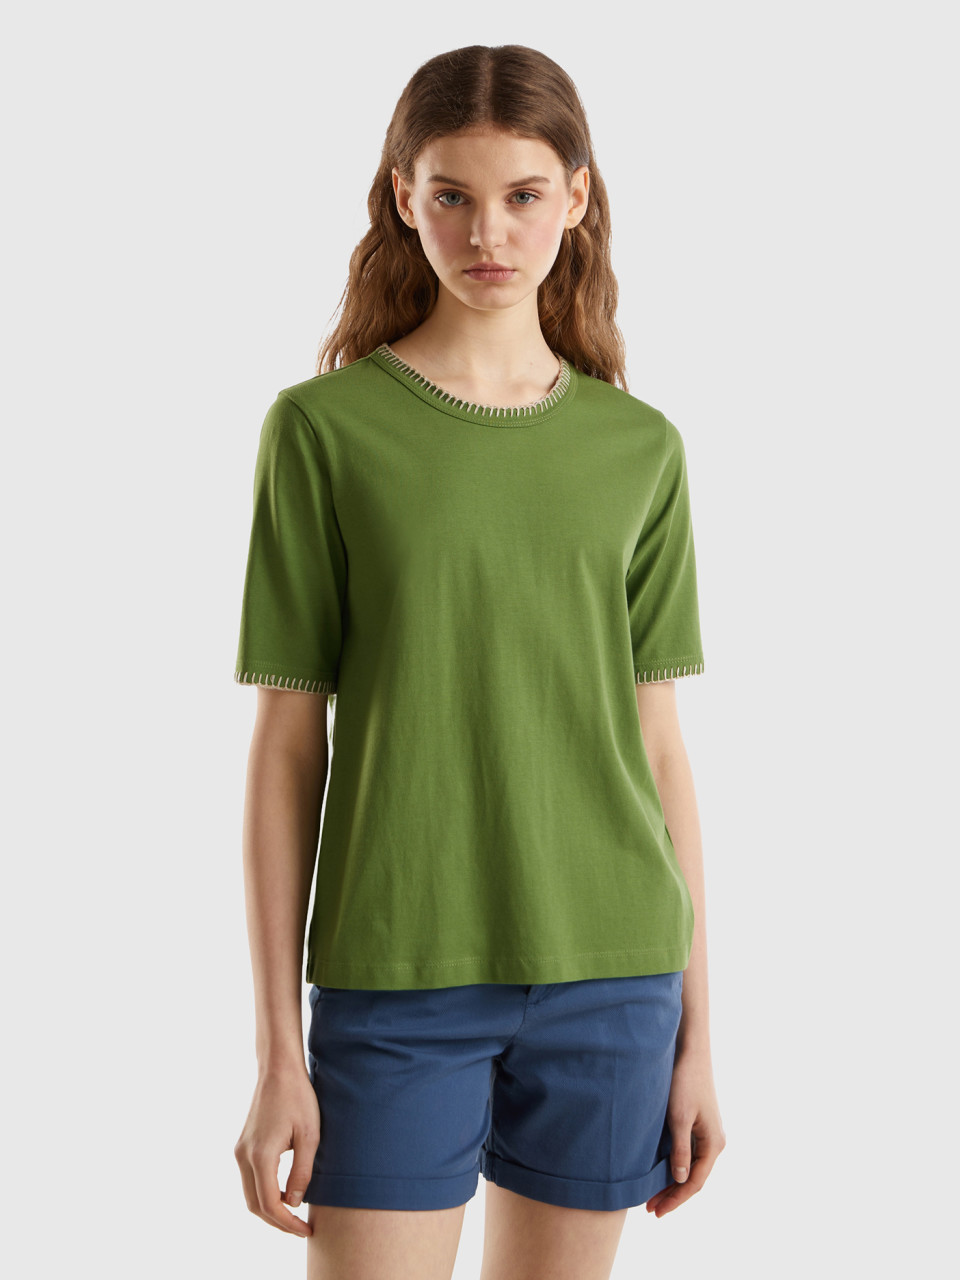 Benetton, Camiseta De Algodón Con Cuello Redondo, Militar, Mujer